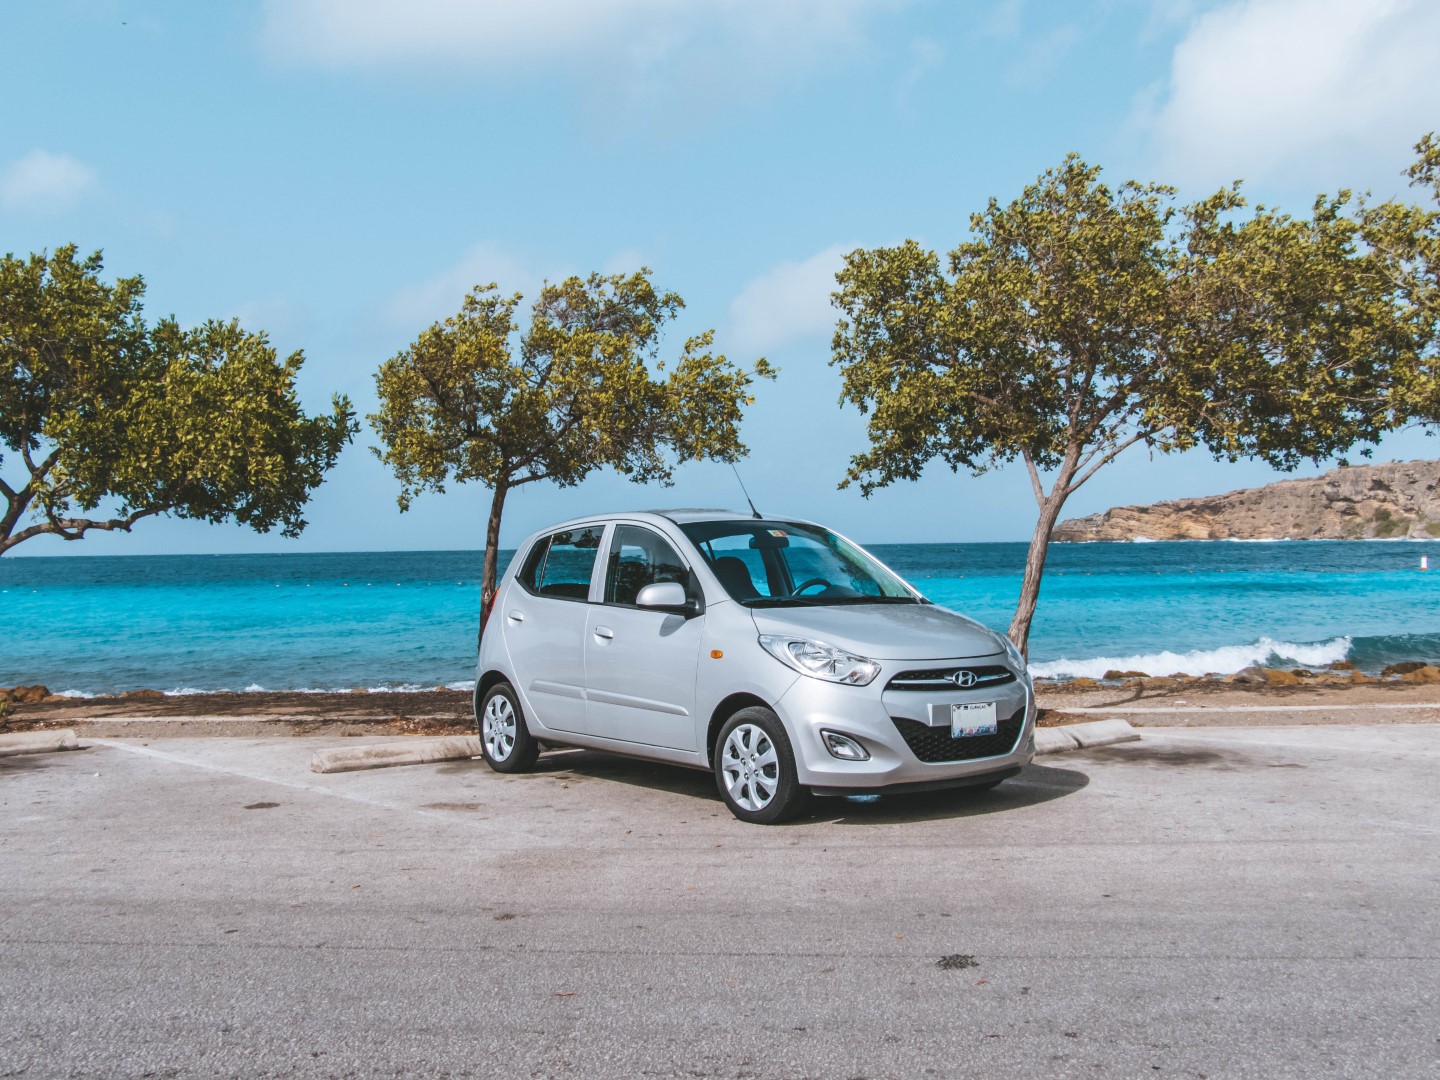 Auto Huren in Curacao ? - vanaf €30,50 per dag een nieuwe auto